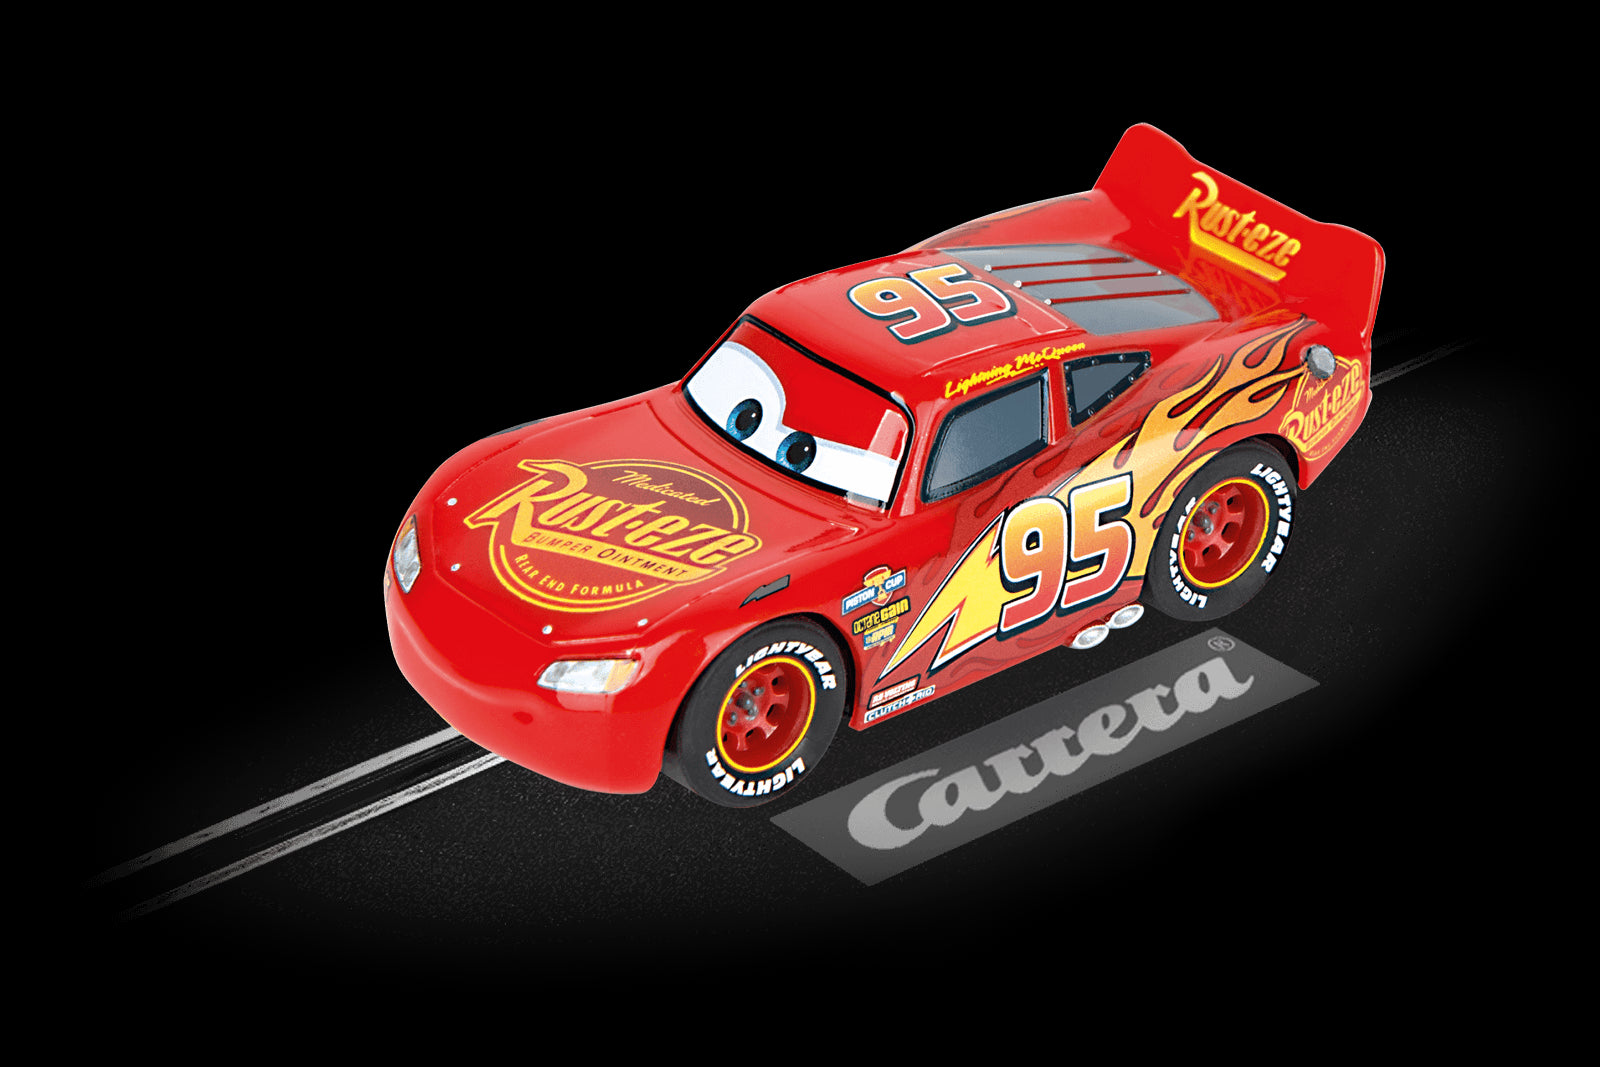 Carrera First Voiture Disney·Pixar Cars - Jackson Storm 20065018